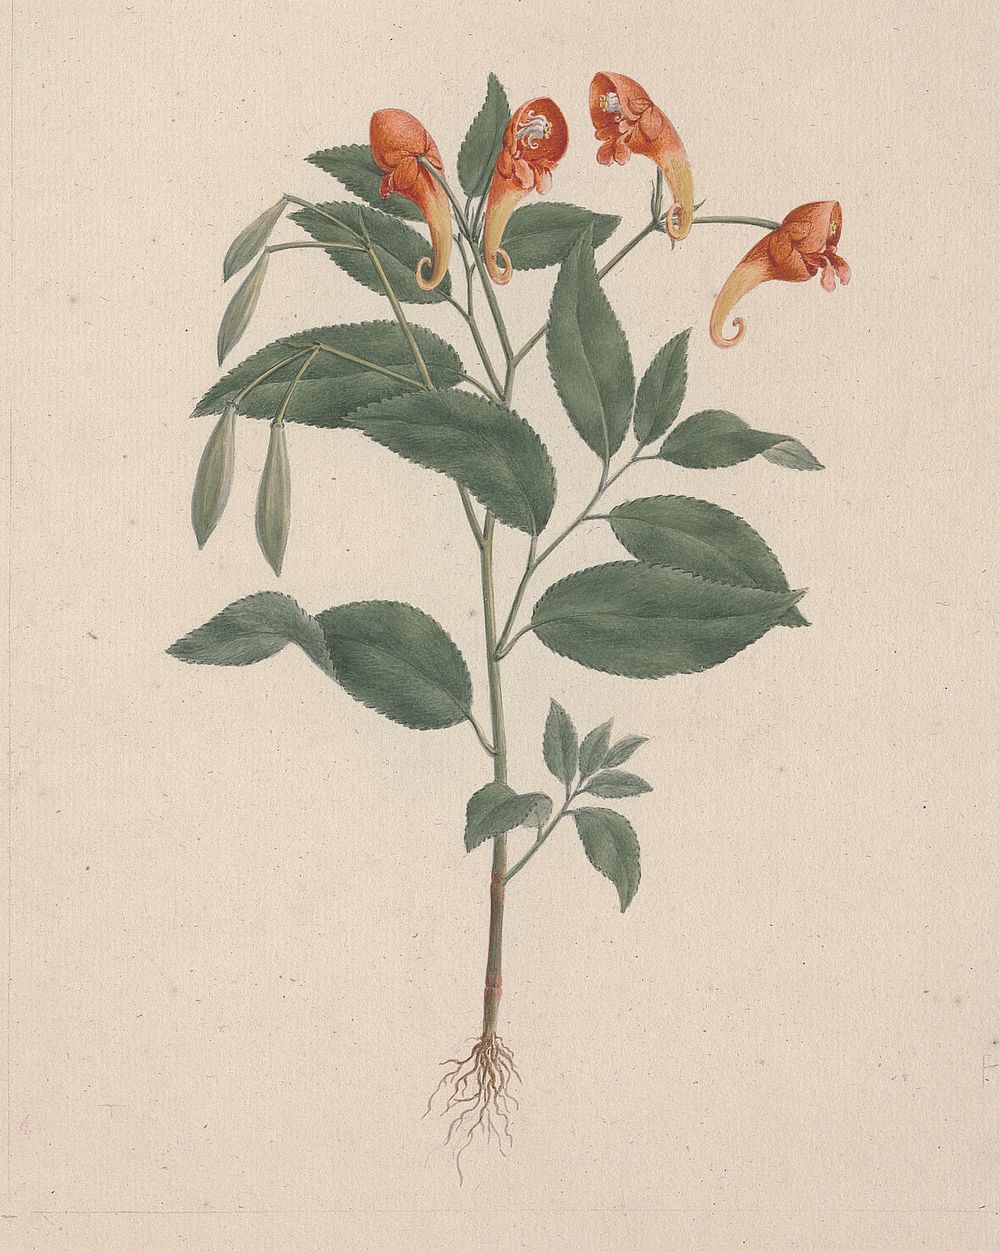 Impatiens rothii  Hook. f. (Balsam): finished drawing of flowering plant by Luigi Balugani